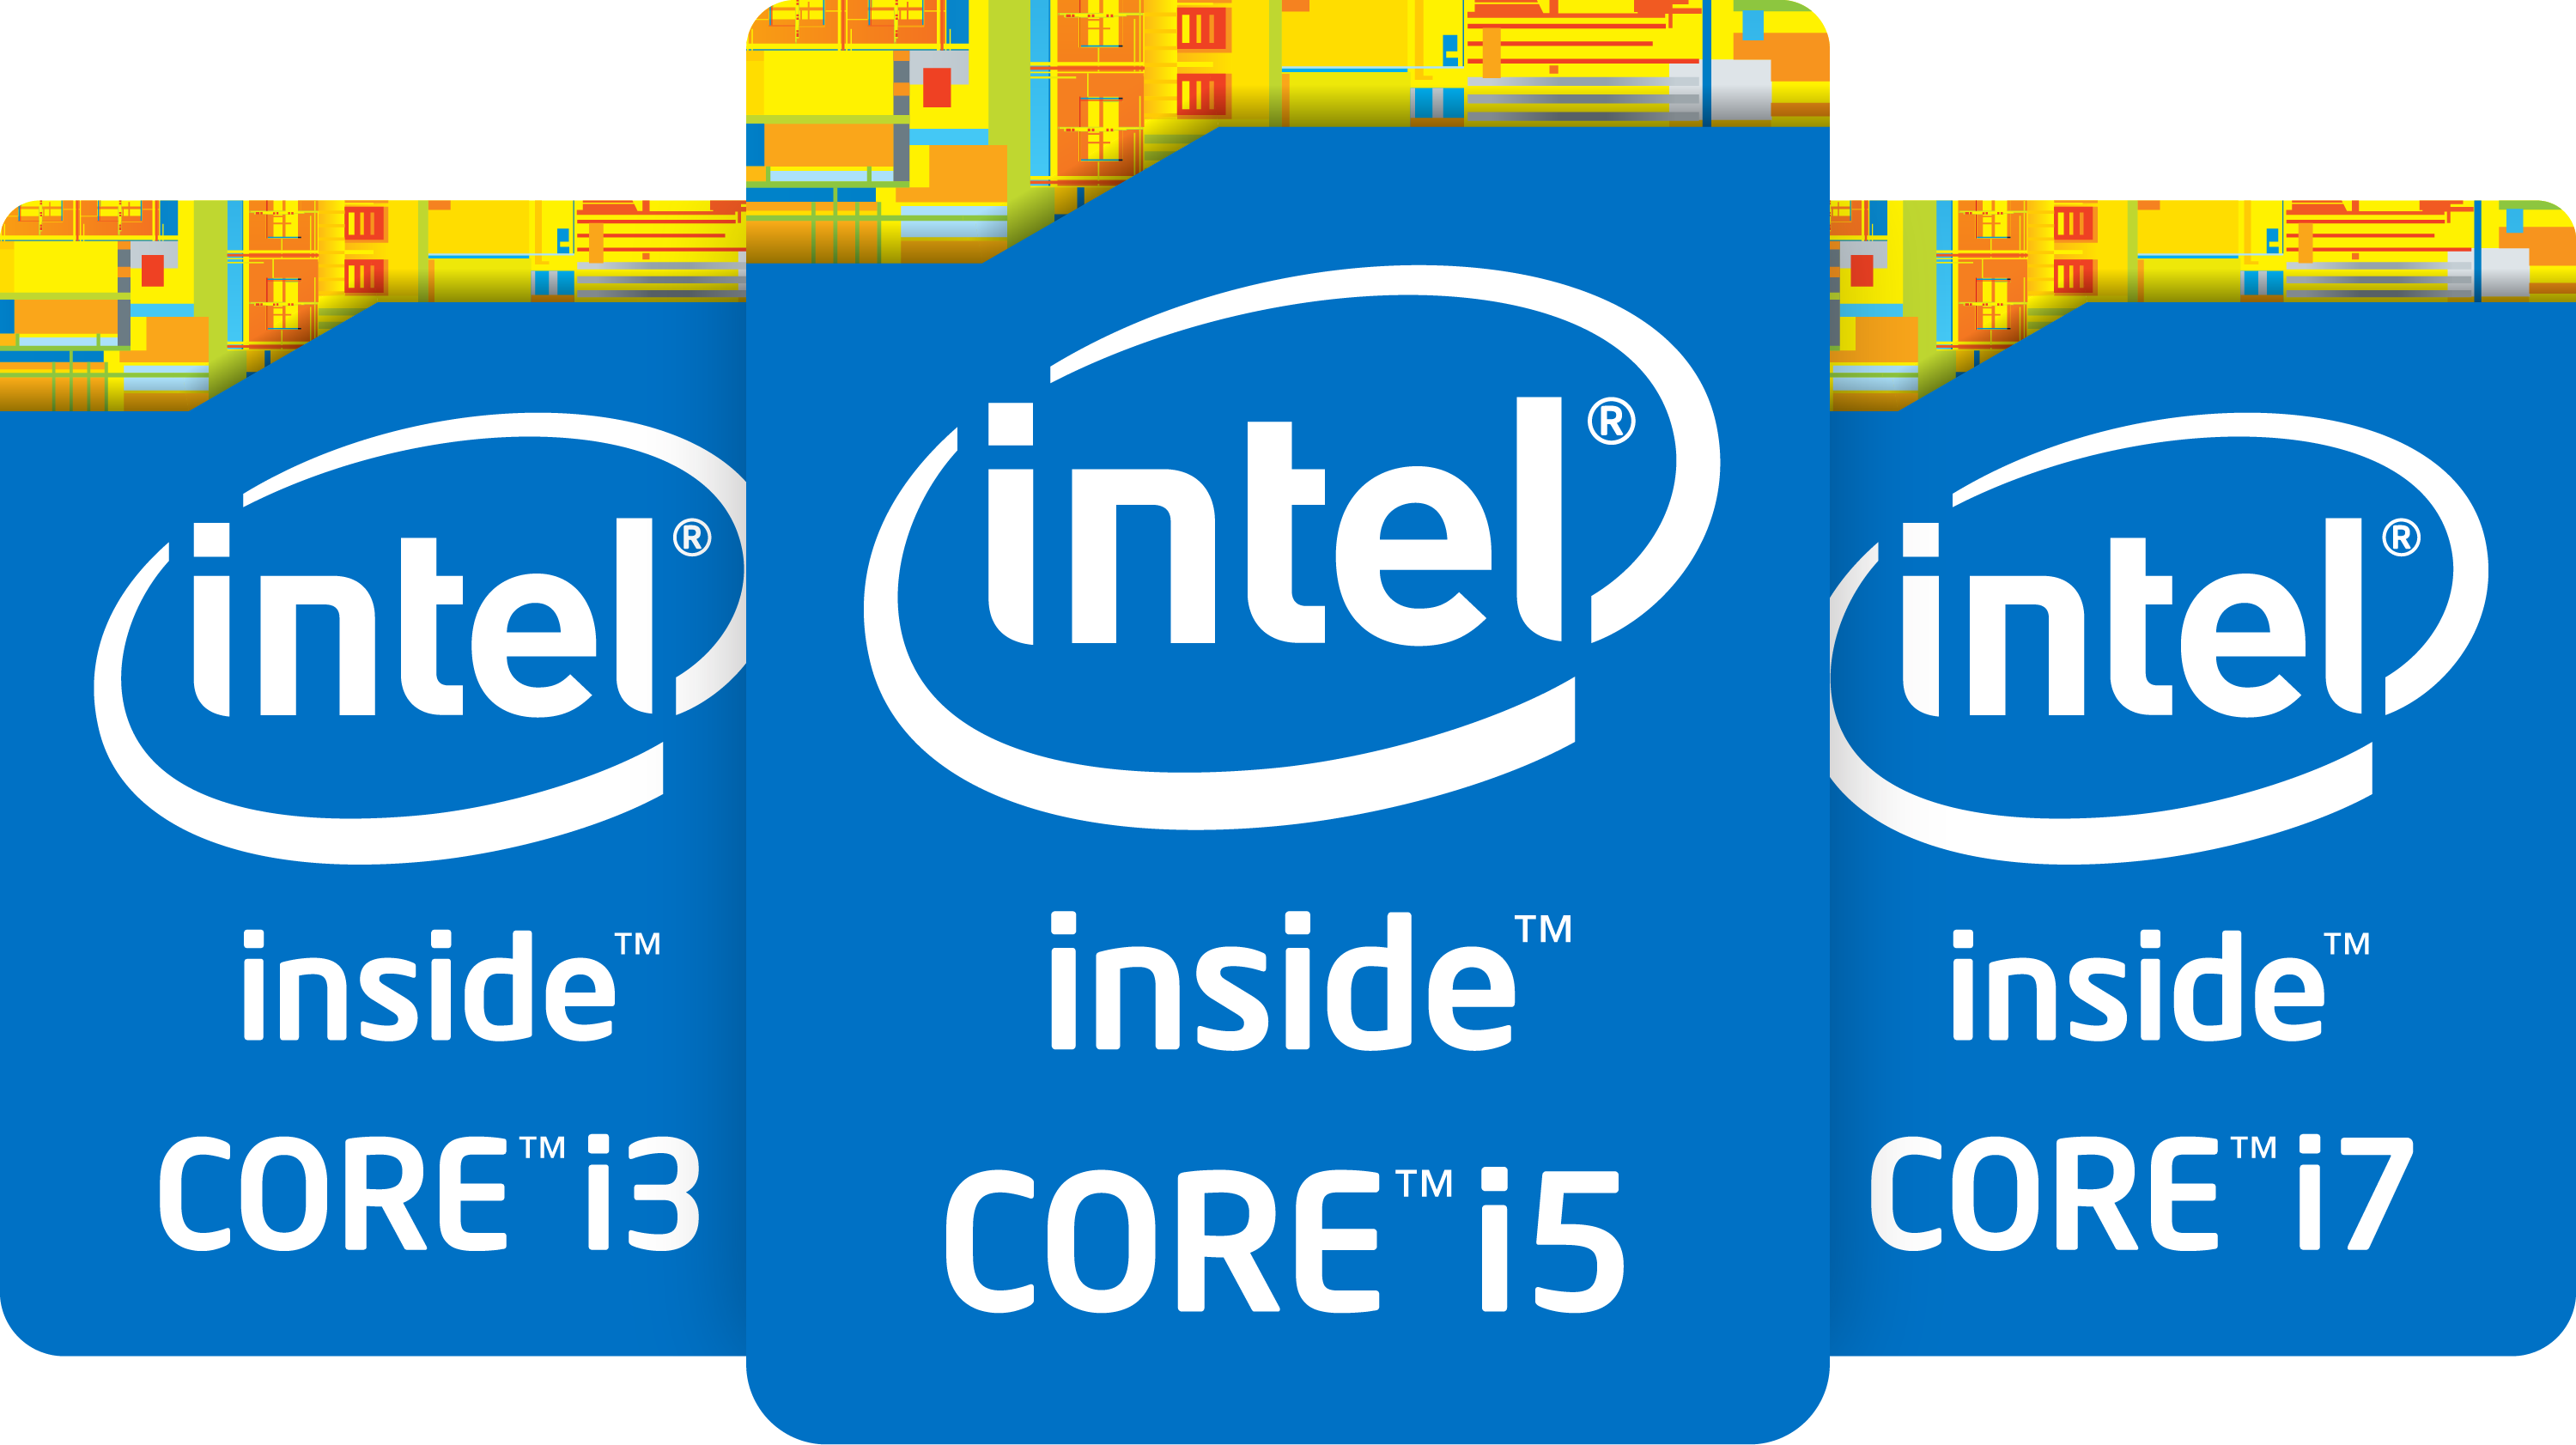 Выбирайте интел. Процессор Intel Core i7 logo. Intel Core i5 logo. Наклейка Intel Core i7. Intel Core i7 inside.